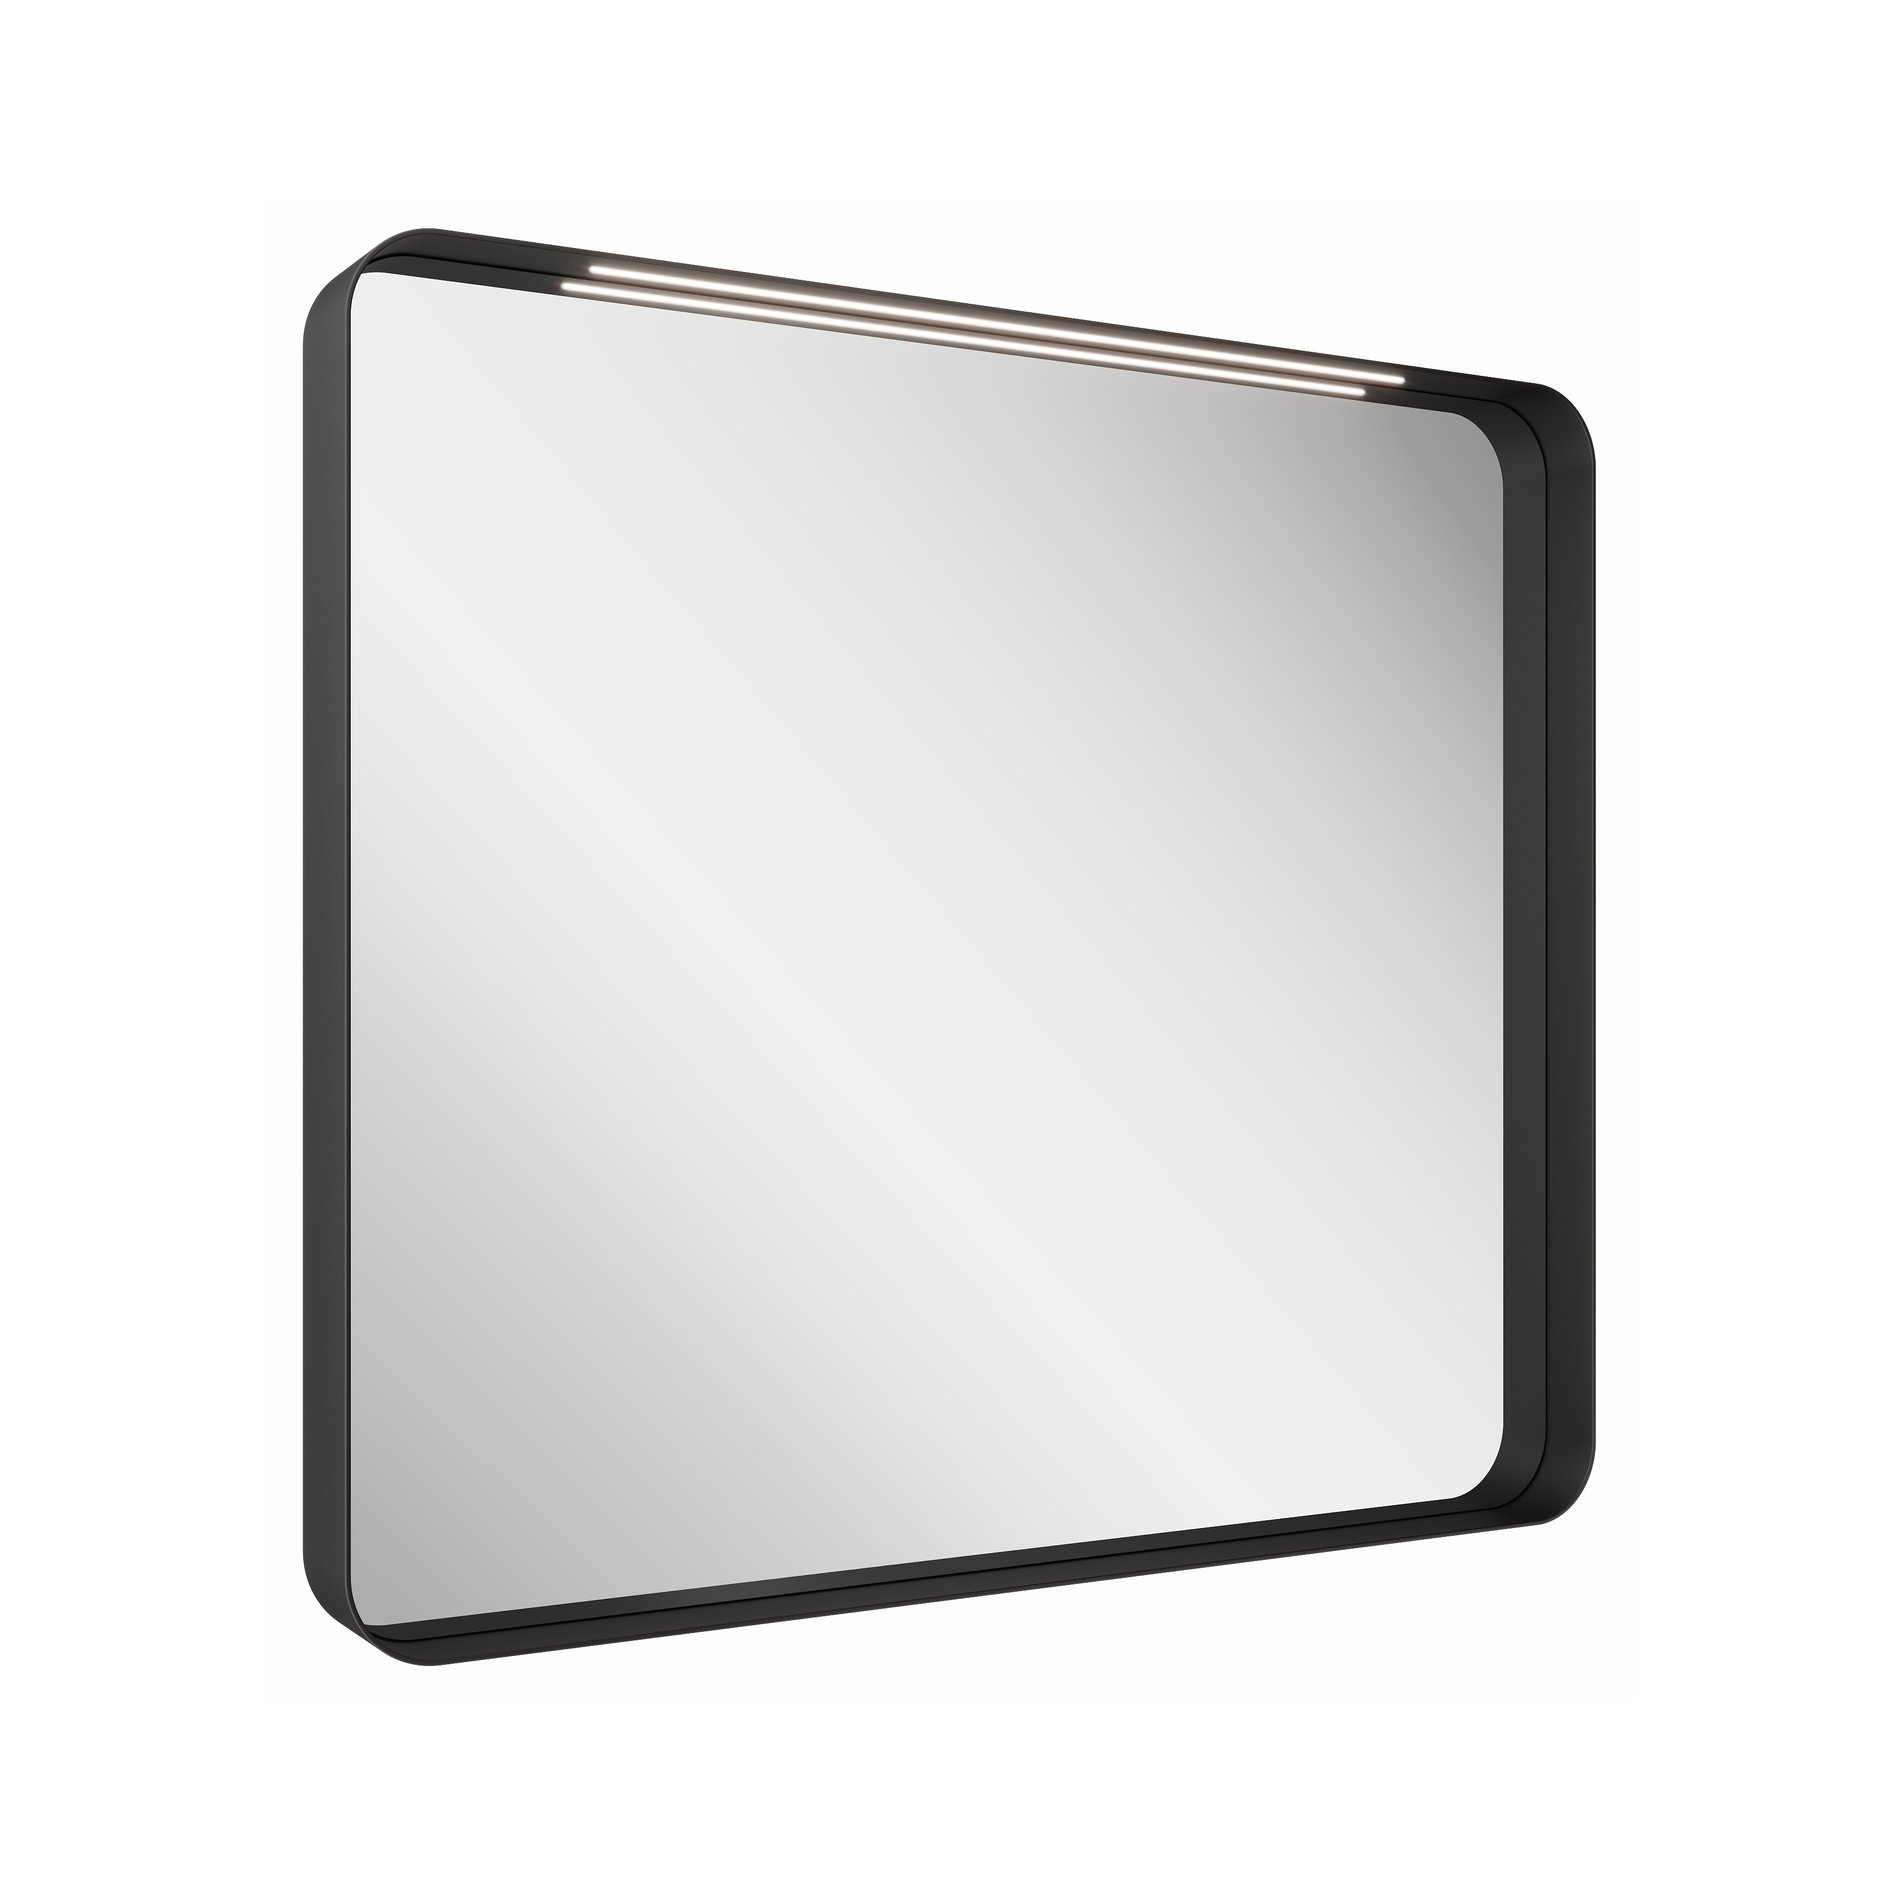 RAVAK Zrcadlo STRIP 500x700 černé s osvětlením